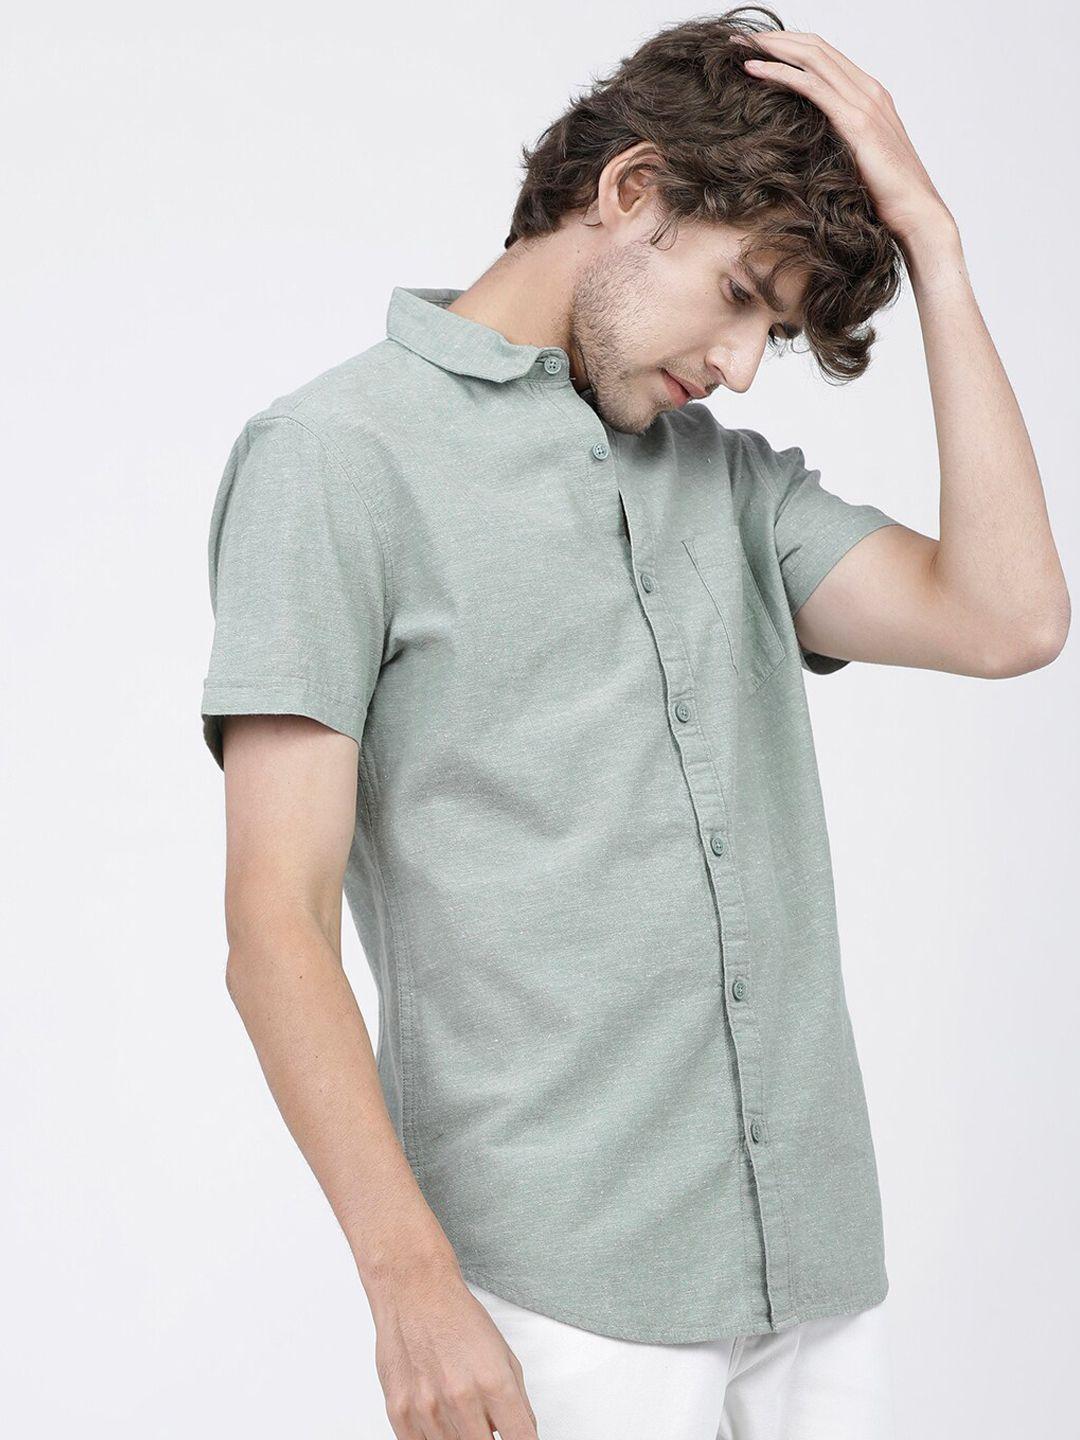 ketch-men-green-slim-fit-opaque-casual-shirt